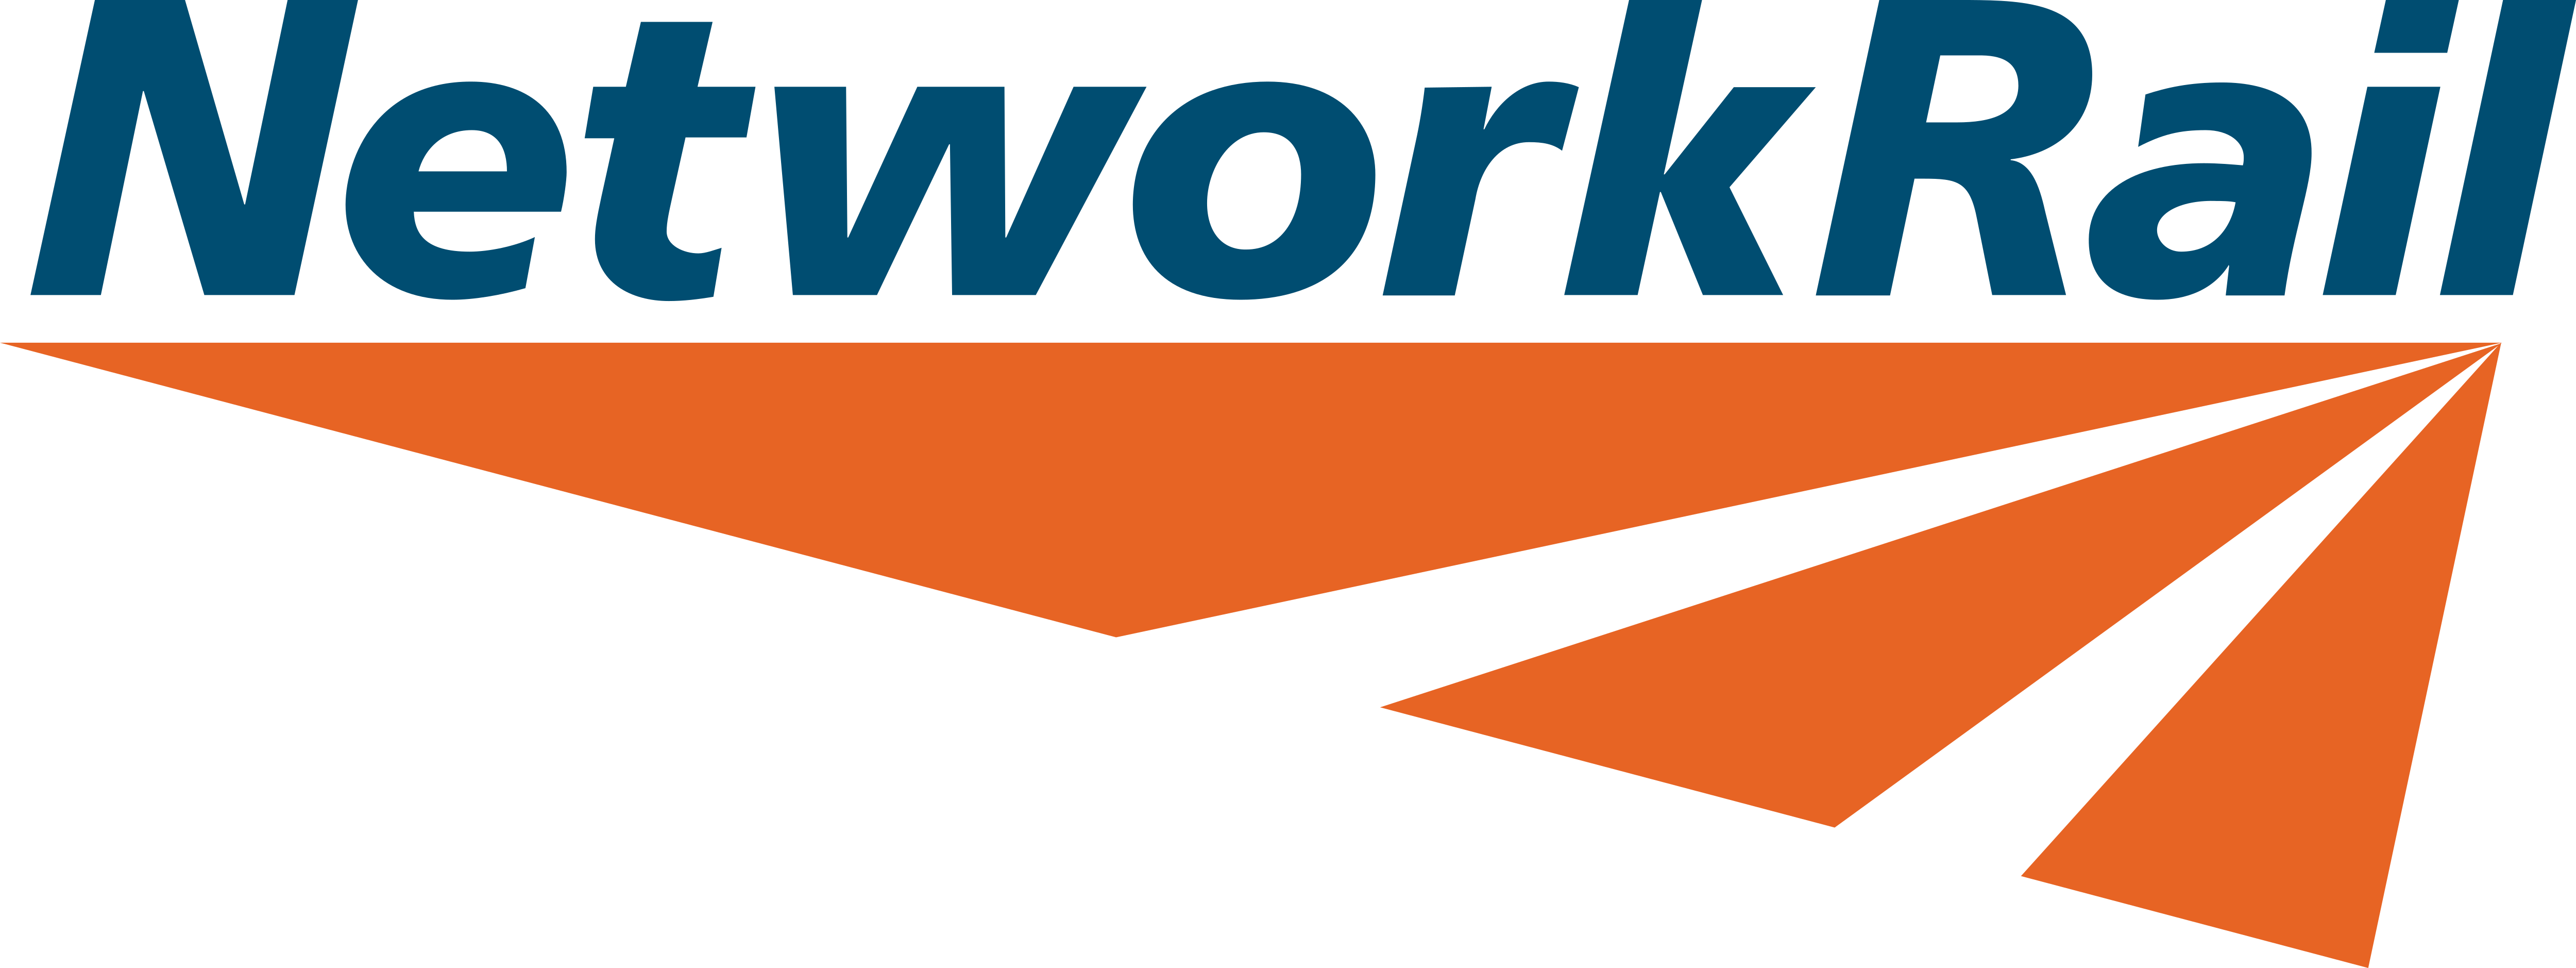 Network-Rail-logo.png